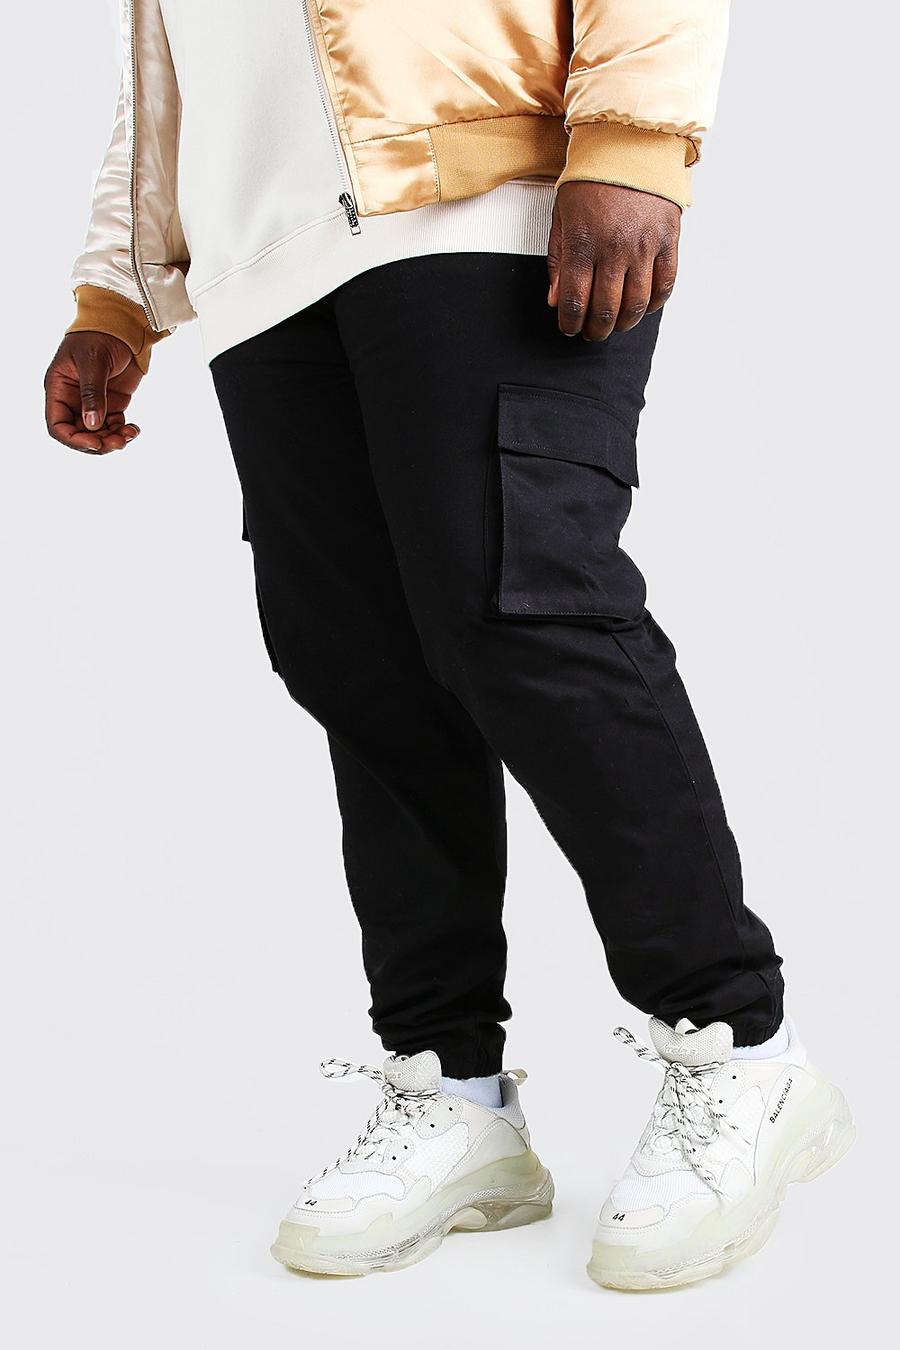 Pantalón deportivo Plus cargo pitillo con bolsillos utilitarios, Negro nero